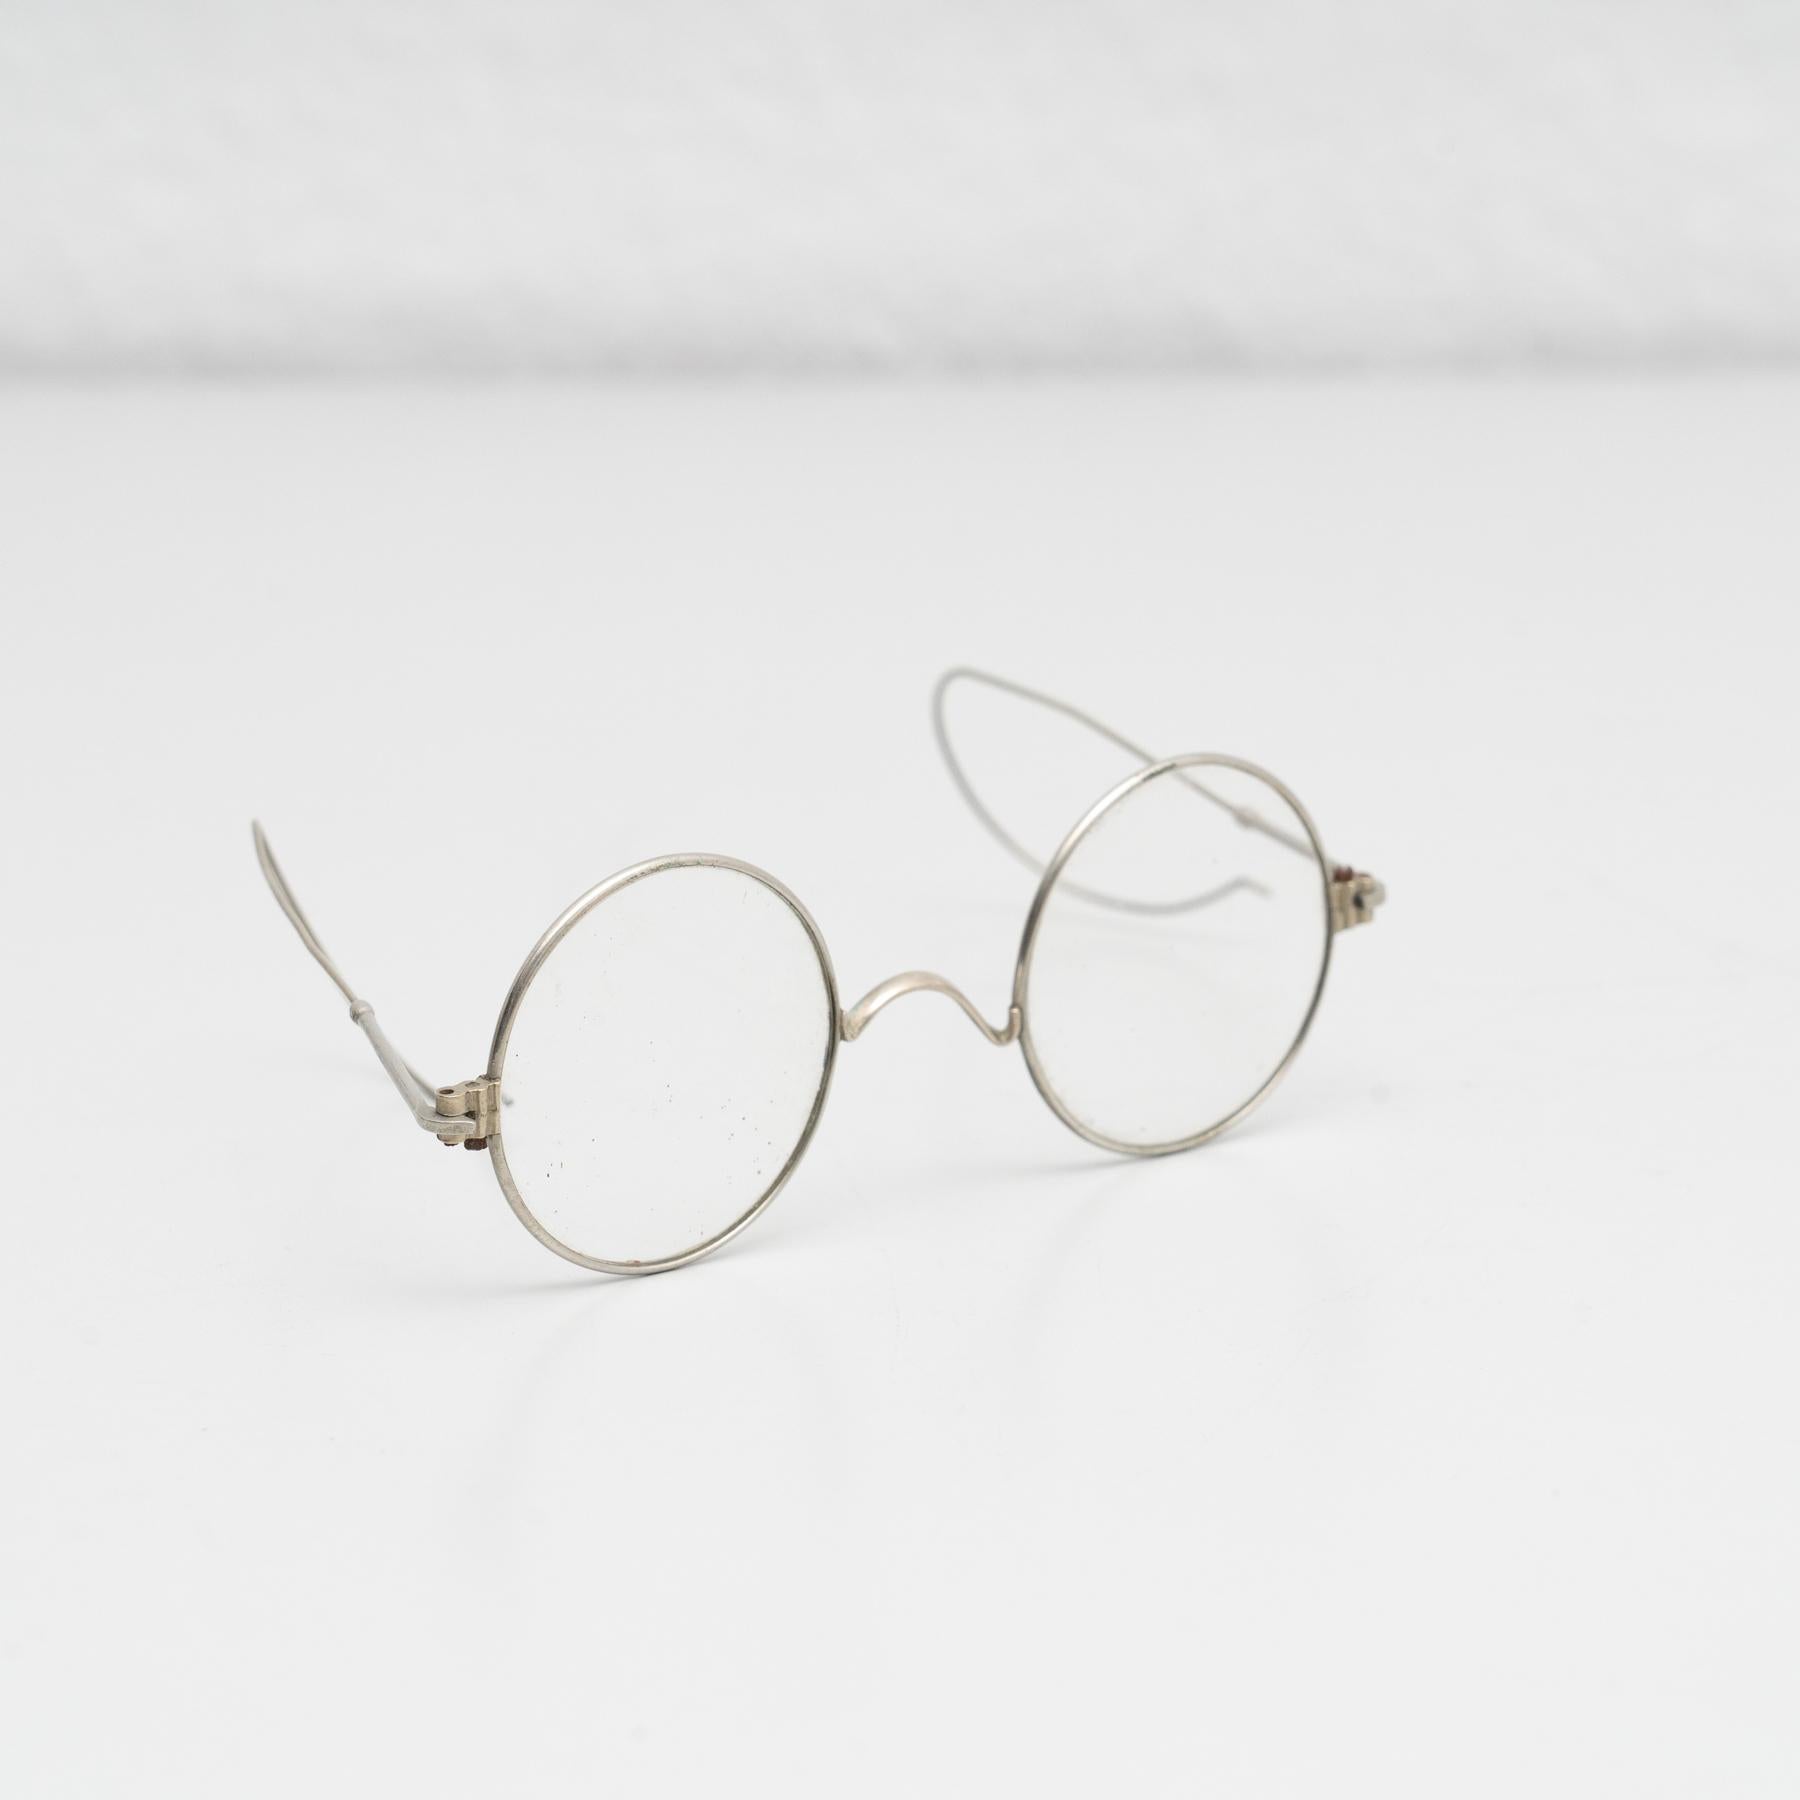 Antike Vintage-Brille.

Hergestellt von einem unbekannten Hersteller in Spanien, um 1950.

Originaler Zustand mit geringen alters- und gebrauchsbedingten Abnutzungserscheinungen, der eine schöne Patina aufweist.

MATERIALIEN:
Glas


 